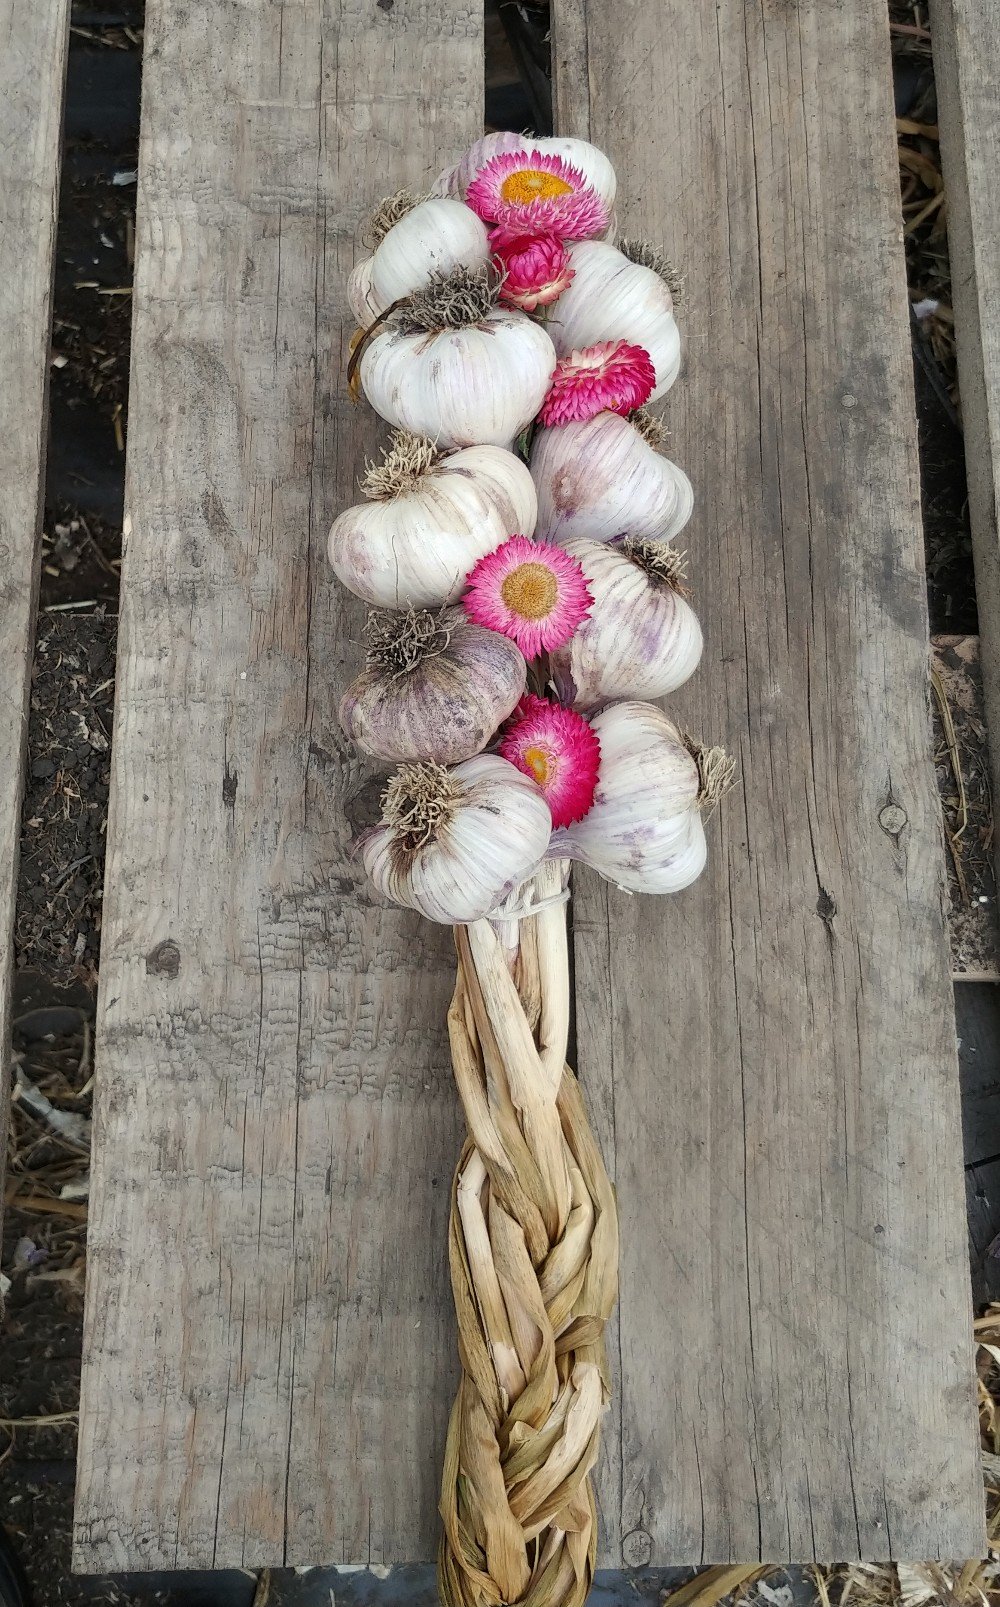 Next Happening: Farm Happenings October 8 - Winter program, garlic and extras